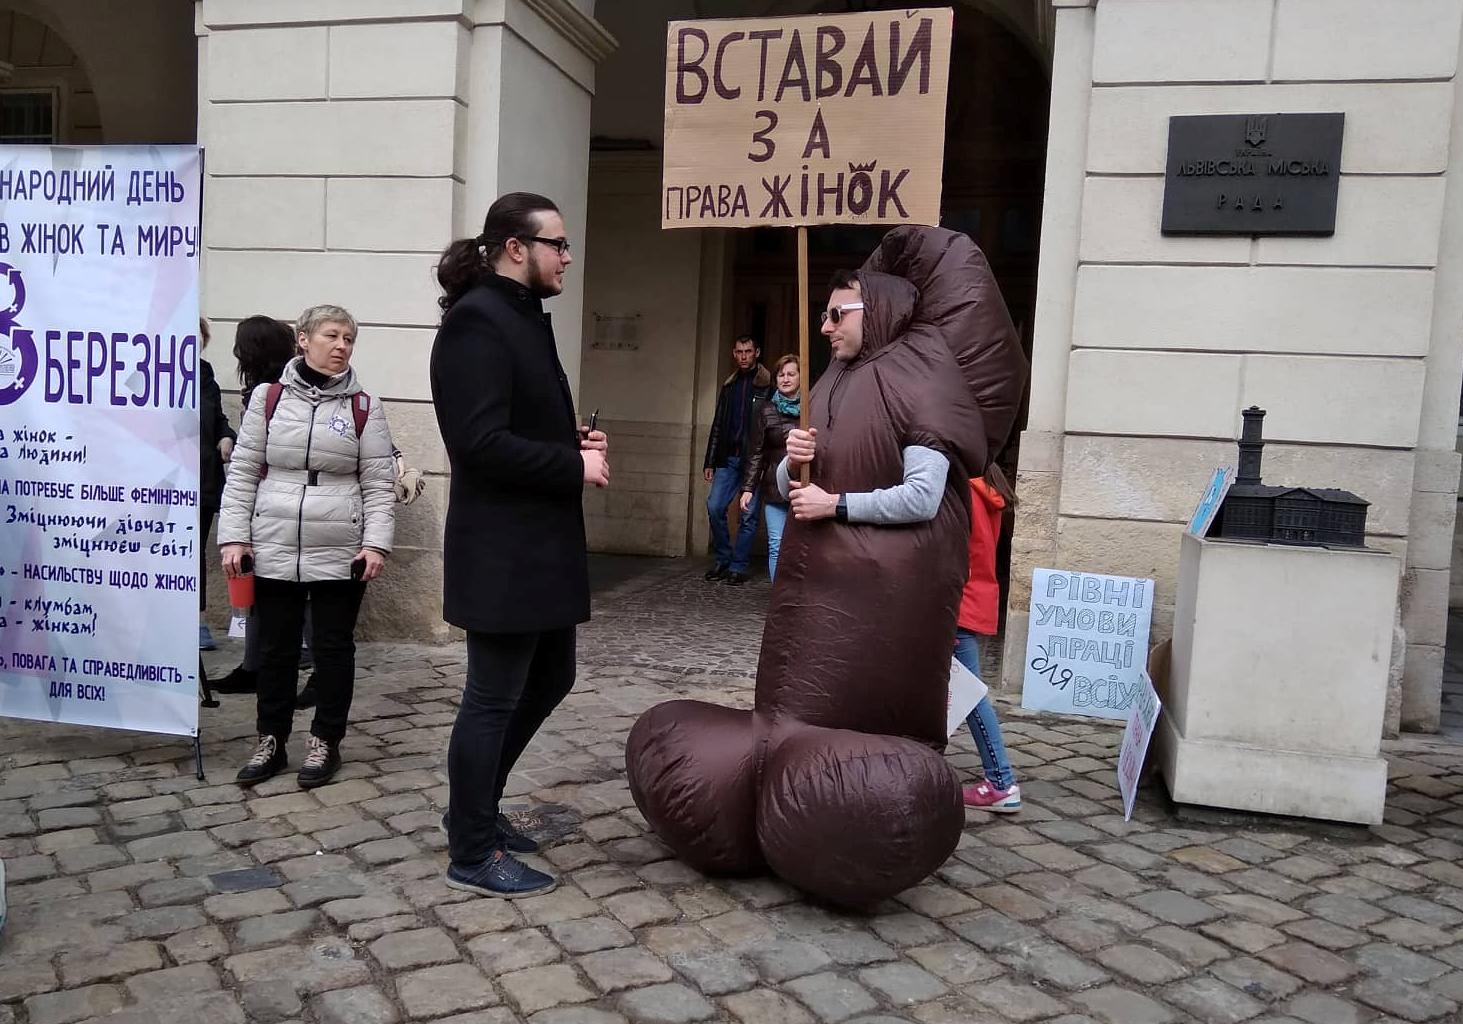 8 березня центром Львова розгулює гігантський пеніс, який відстоює права жінок. Фото ІА Вголос.